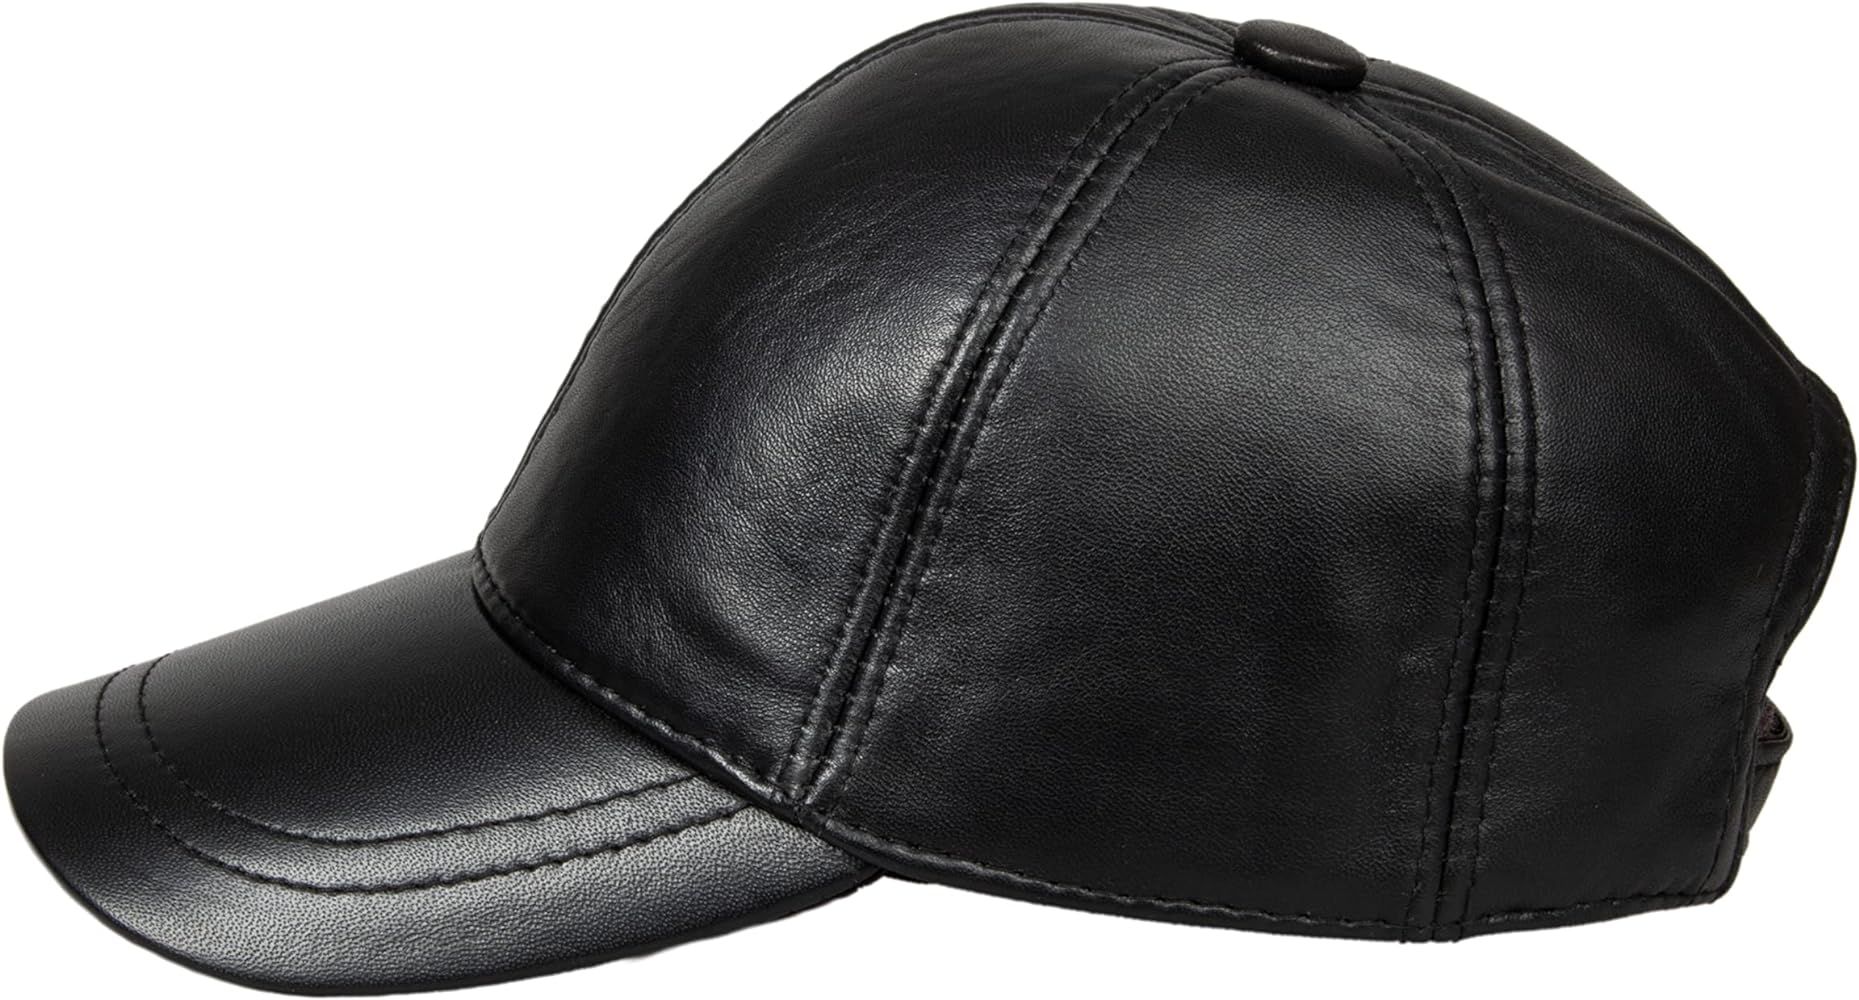 Genuine Leather Unisex Baseball Cap | Amazon (US)